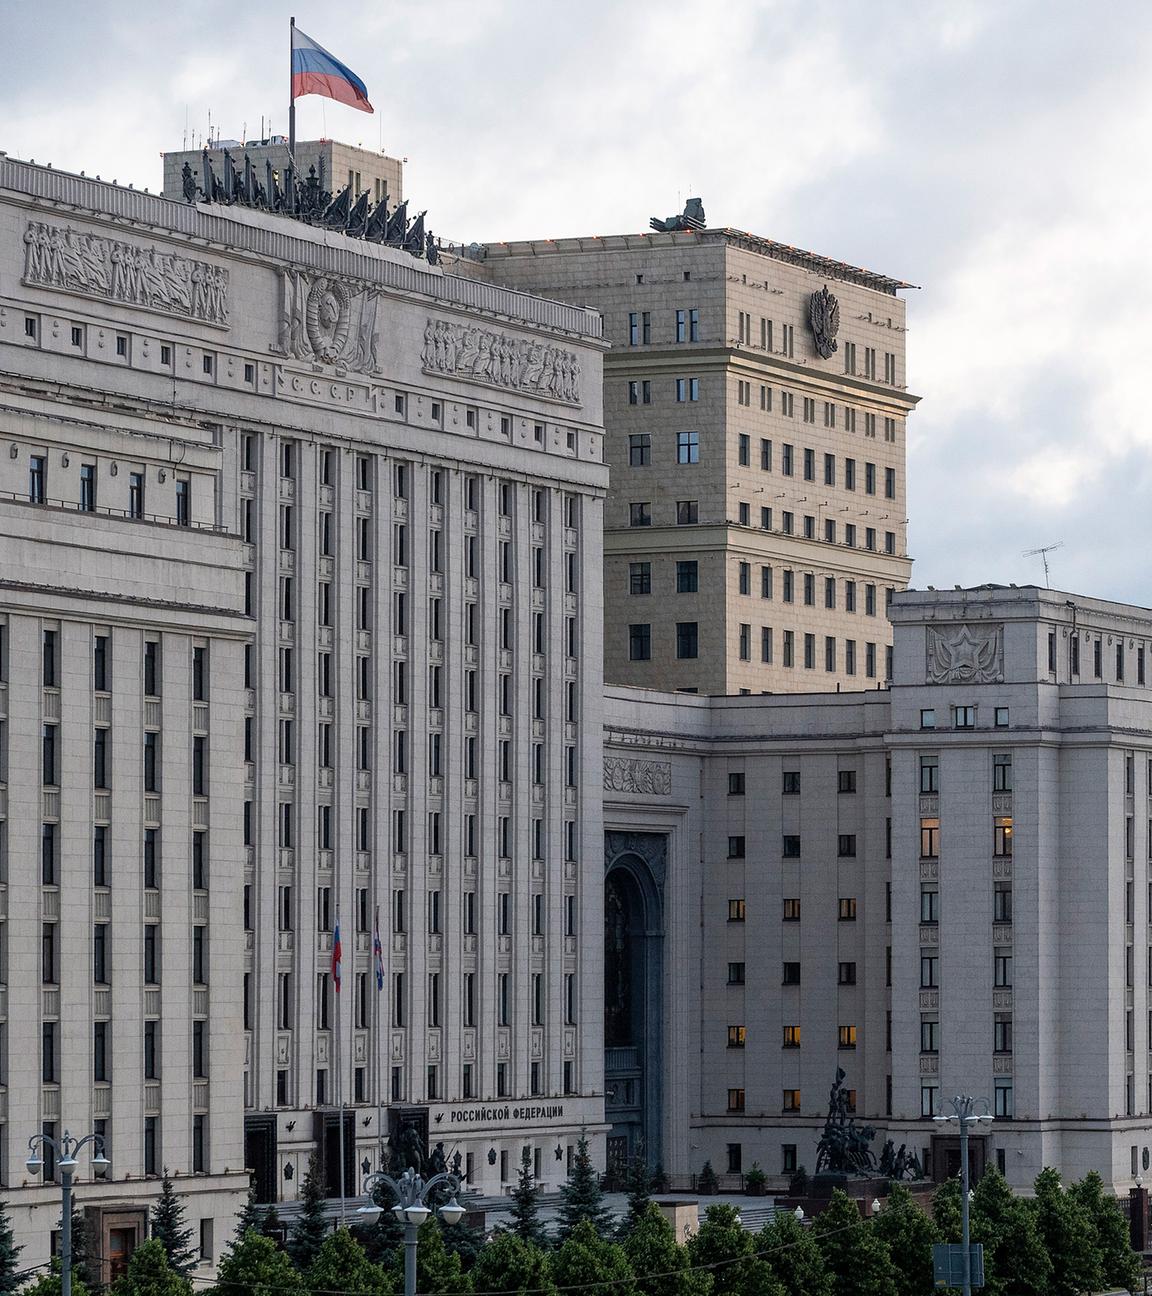 Archiv: Ein Blick auf das Gebäude des russischen Verteidigungsministeriums mit Flugabwehrsystemen auf dem Dach in Moskau (Russland)